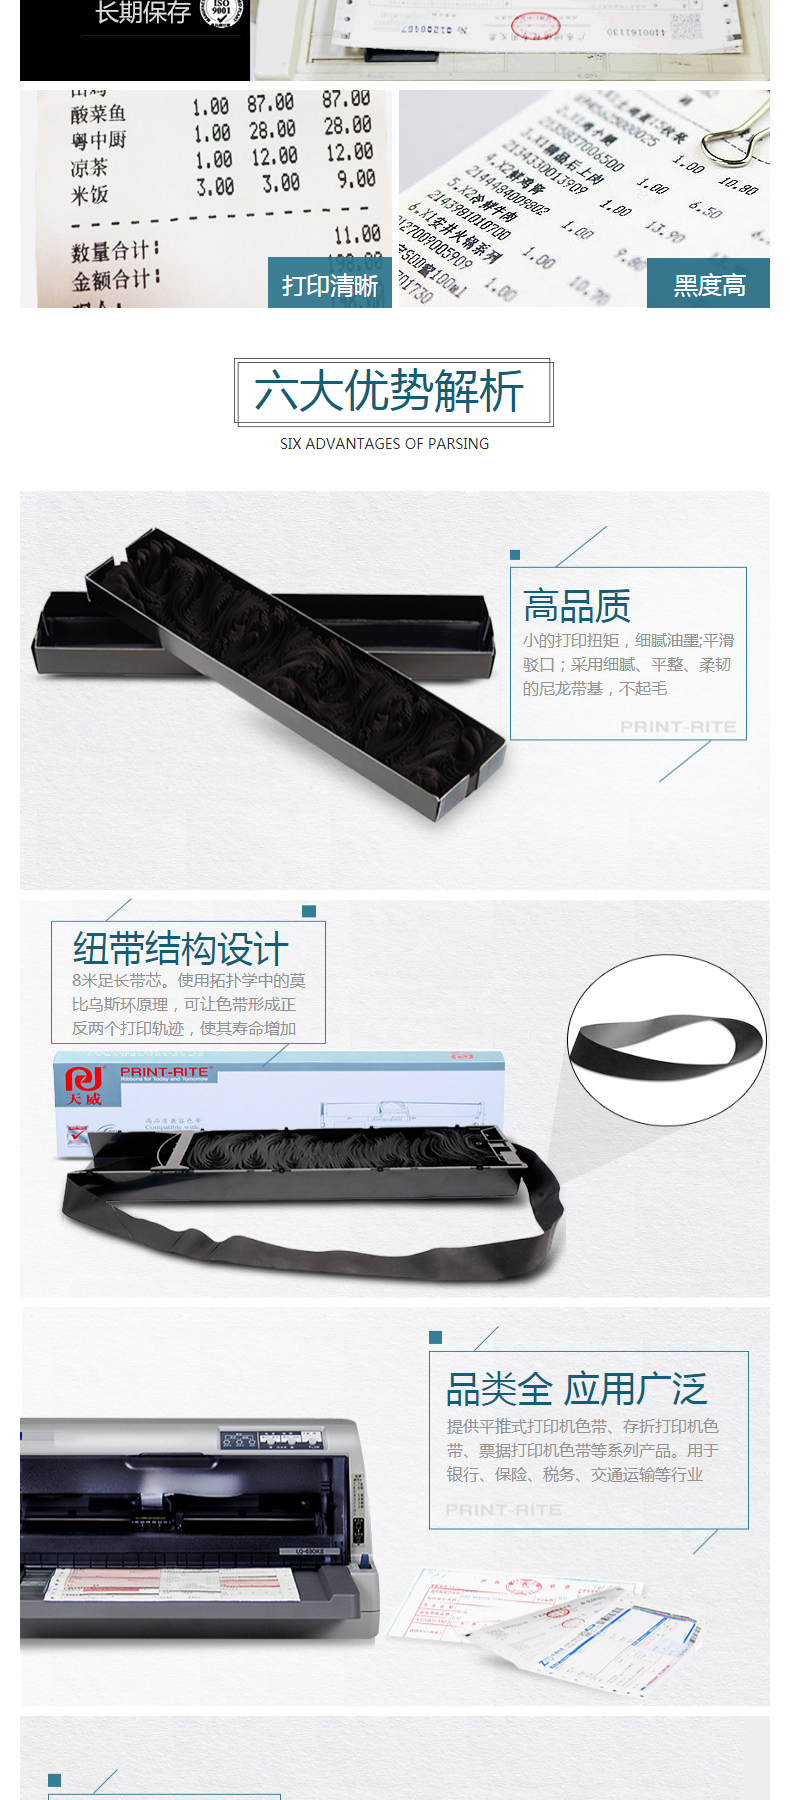 天威 PRINT-RITE 色带框/色带架 FUJITSU-DPK200 RFF123BPRJ 17m*9mm (黑色) (10盒起订)